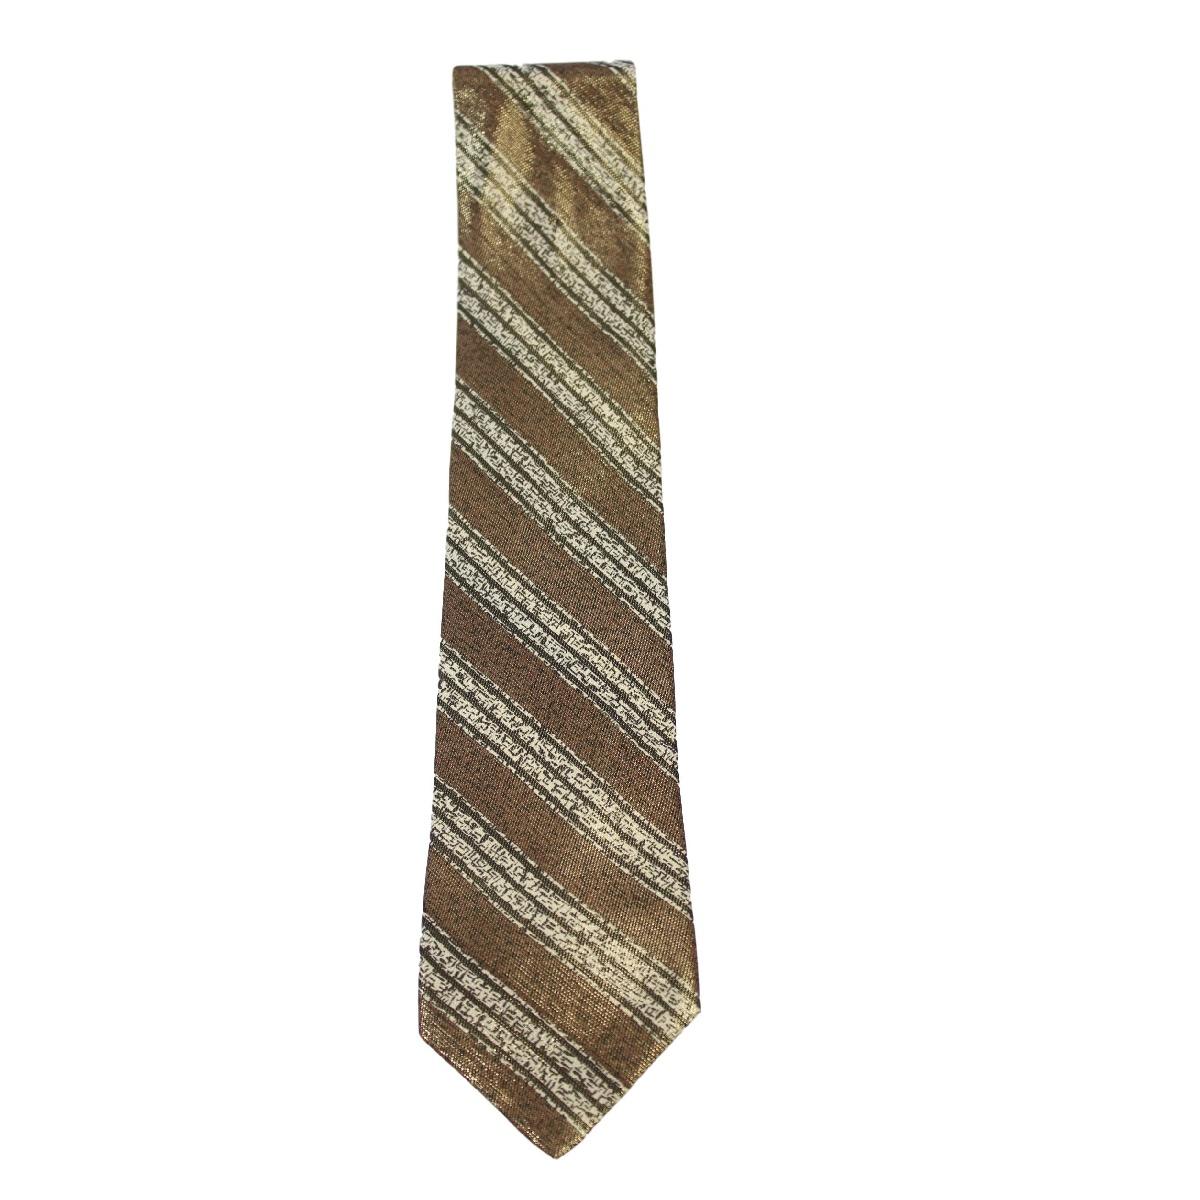 Brioni Vintage klassische Krawatte. Goldene und grüne Krawatte mit schillernden geometrischen Mustern, 100% Seide. Hergestellt in Italien. Neu ohne Label.

Länge: etwa 147 cm
Breite: etwa 8 cm